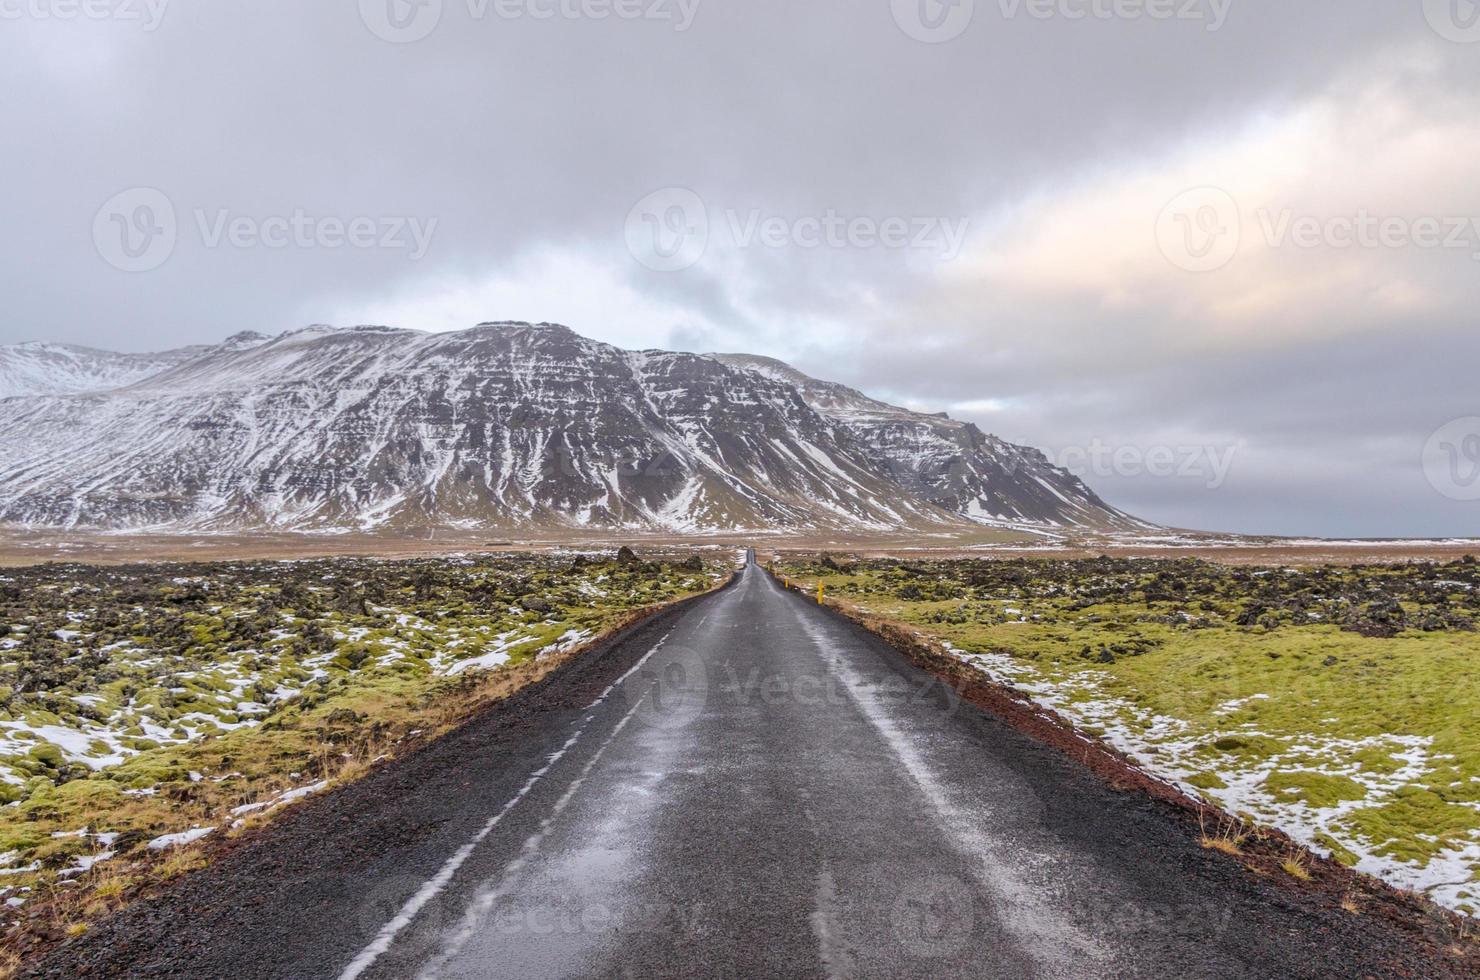 uma paisagem coberta de musgo de lava misturada faz fronteira com esta estrada estreita na Islândia. a estrada continua em direção a uma montanha coberta de neve à frente. foto